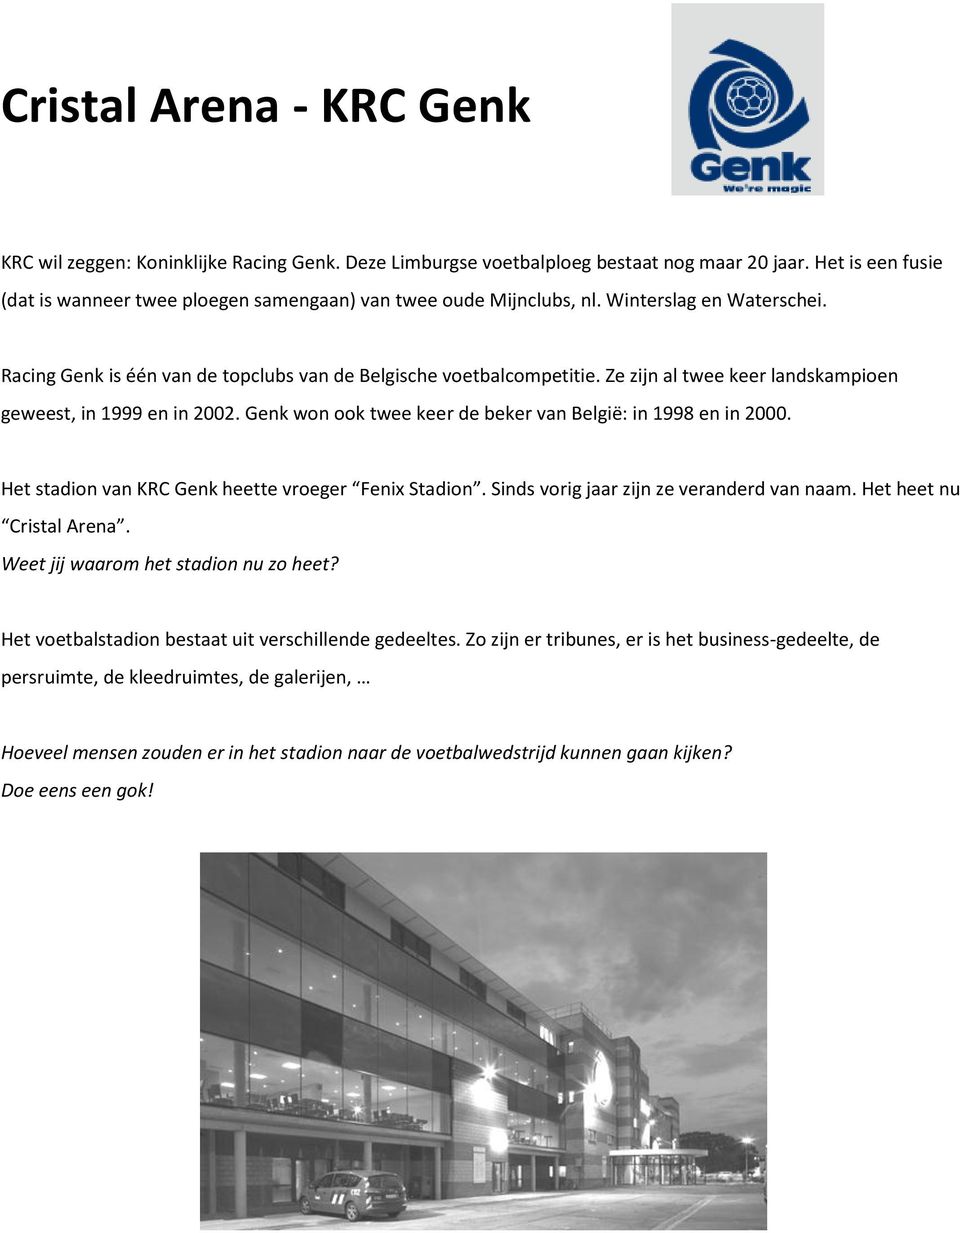 Ze zijn al twee keer landskampioen geweest, in 1999 en in 2002. Genk won ook twee keer de beker van België: in 1998 en in 2000. Het stadion van KRC Genk heette vroeger Fenix Stadion.